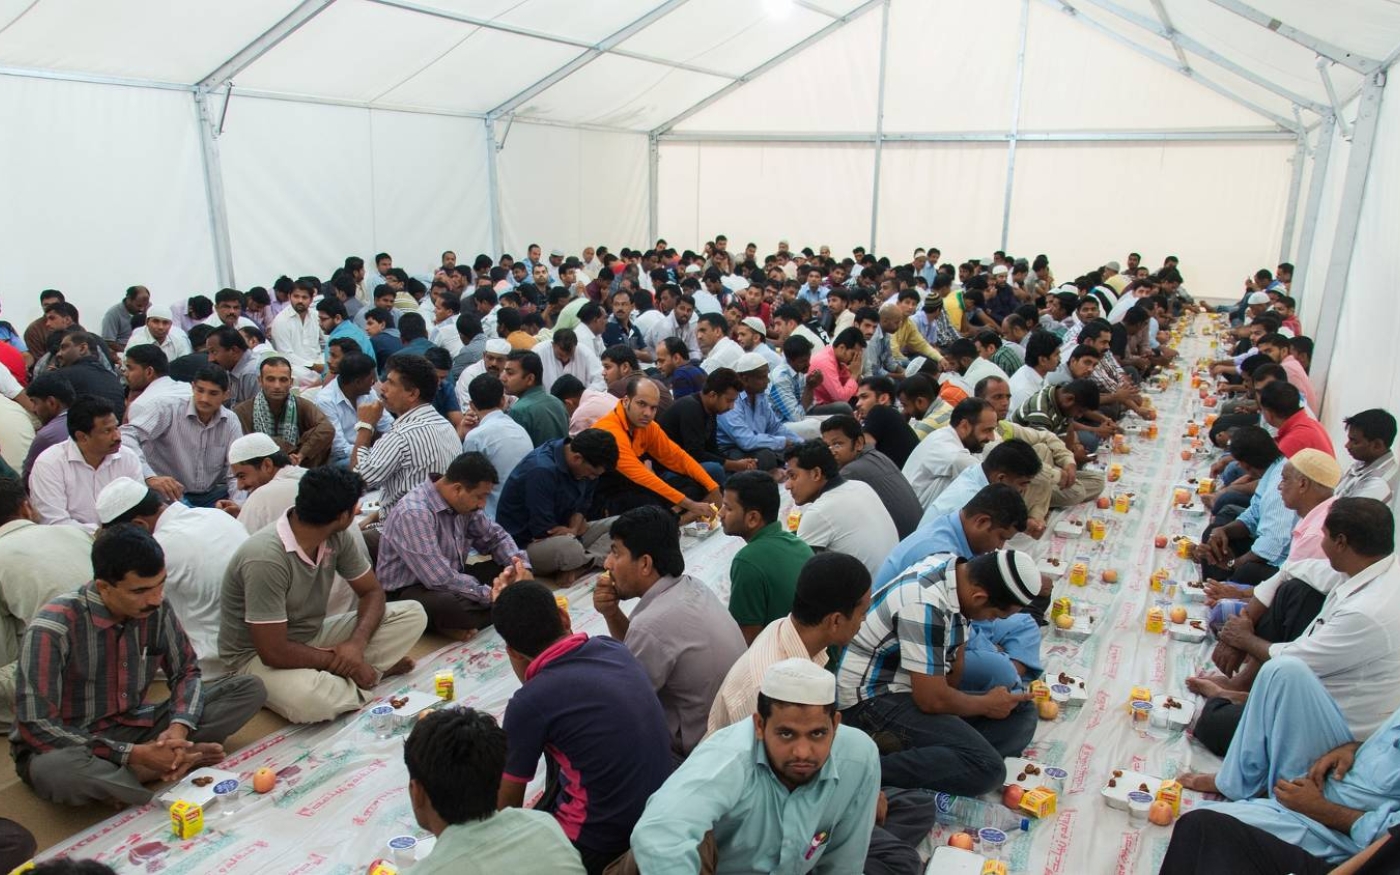 Des tentes sont souvent montées dans de grands espaces ouverts pour offrir des repas gratuits aux travailleurs immigrés lors du Ramadan (Creative Commons/Ahmad Ardity)